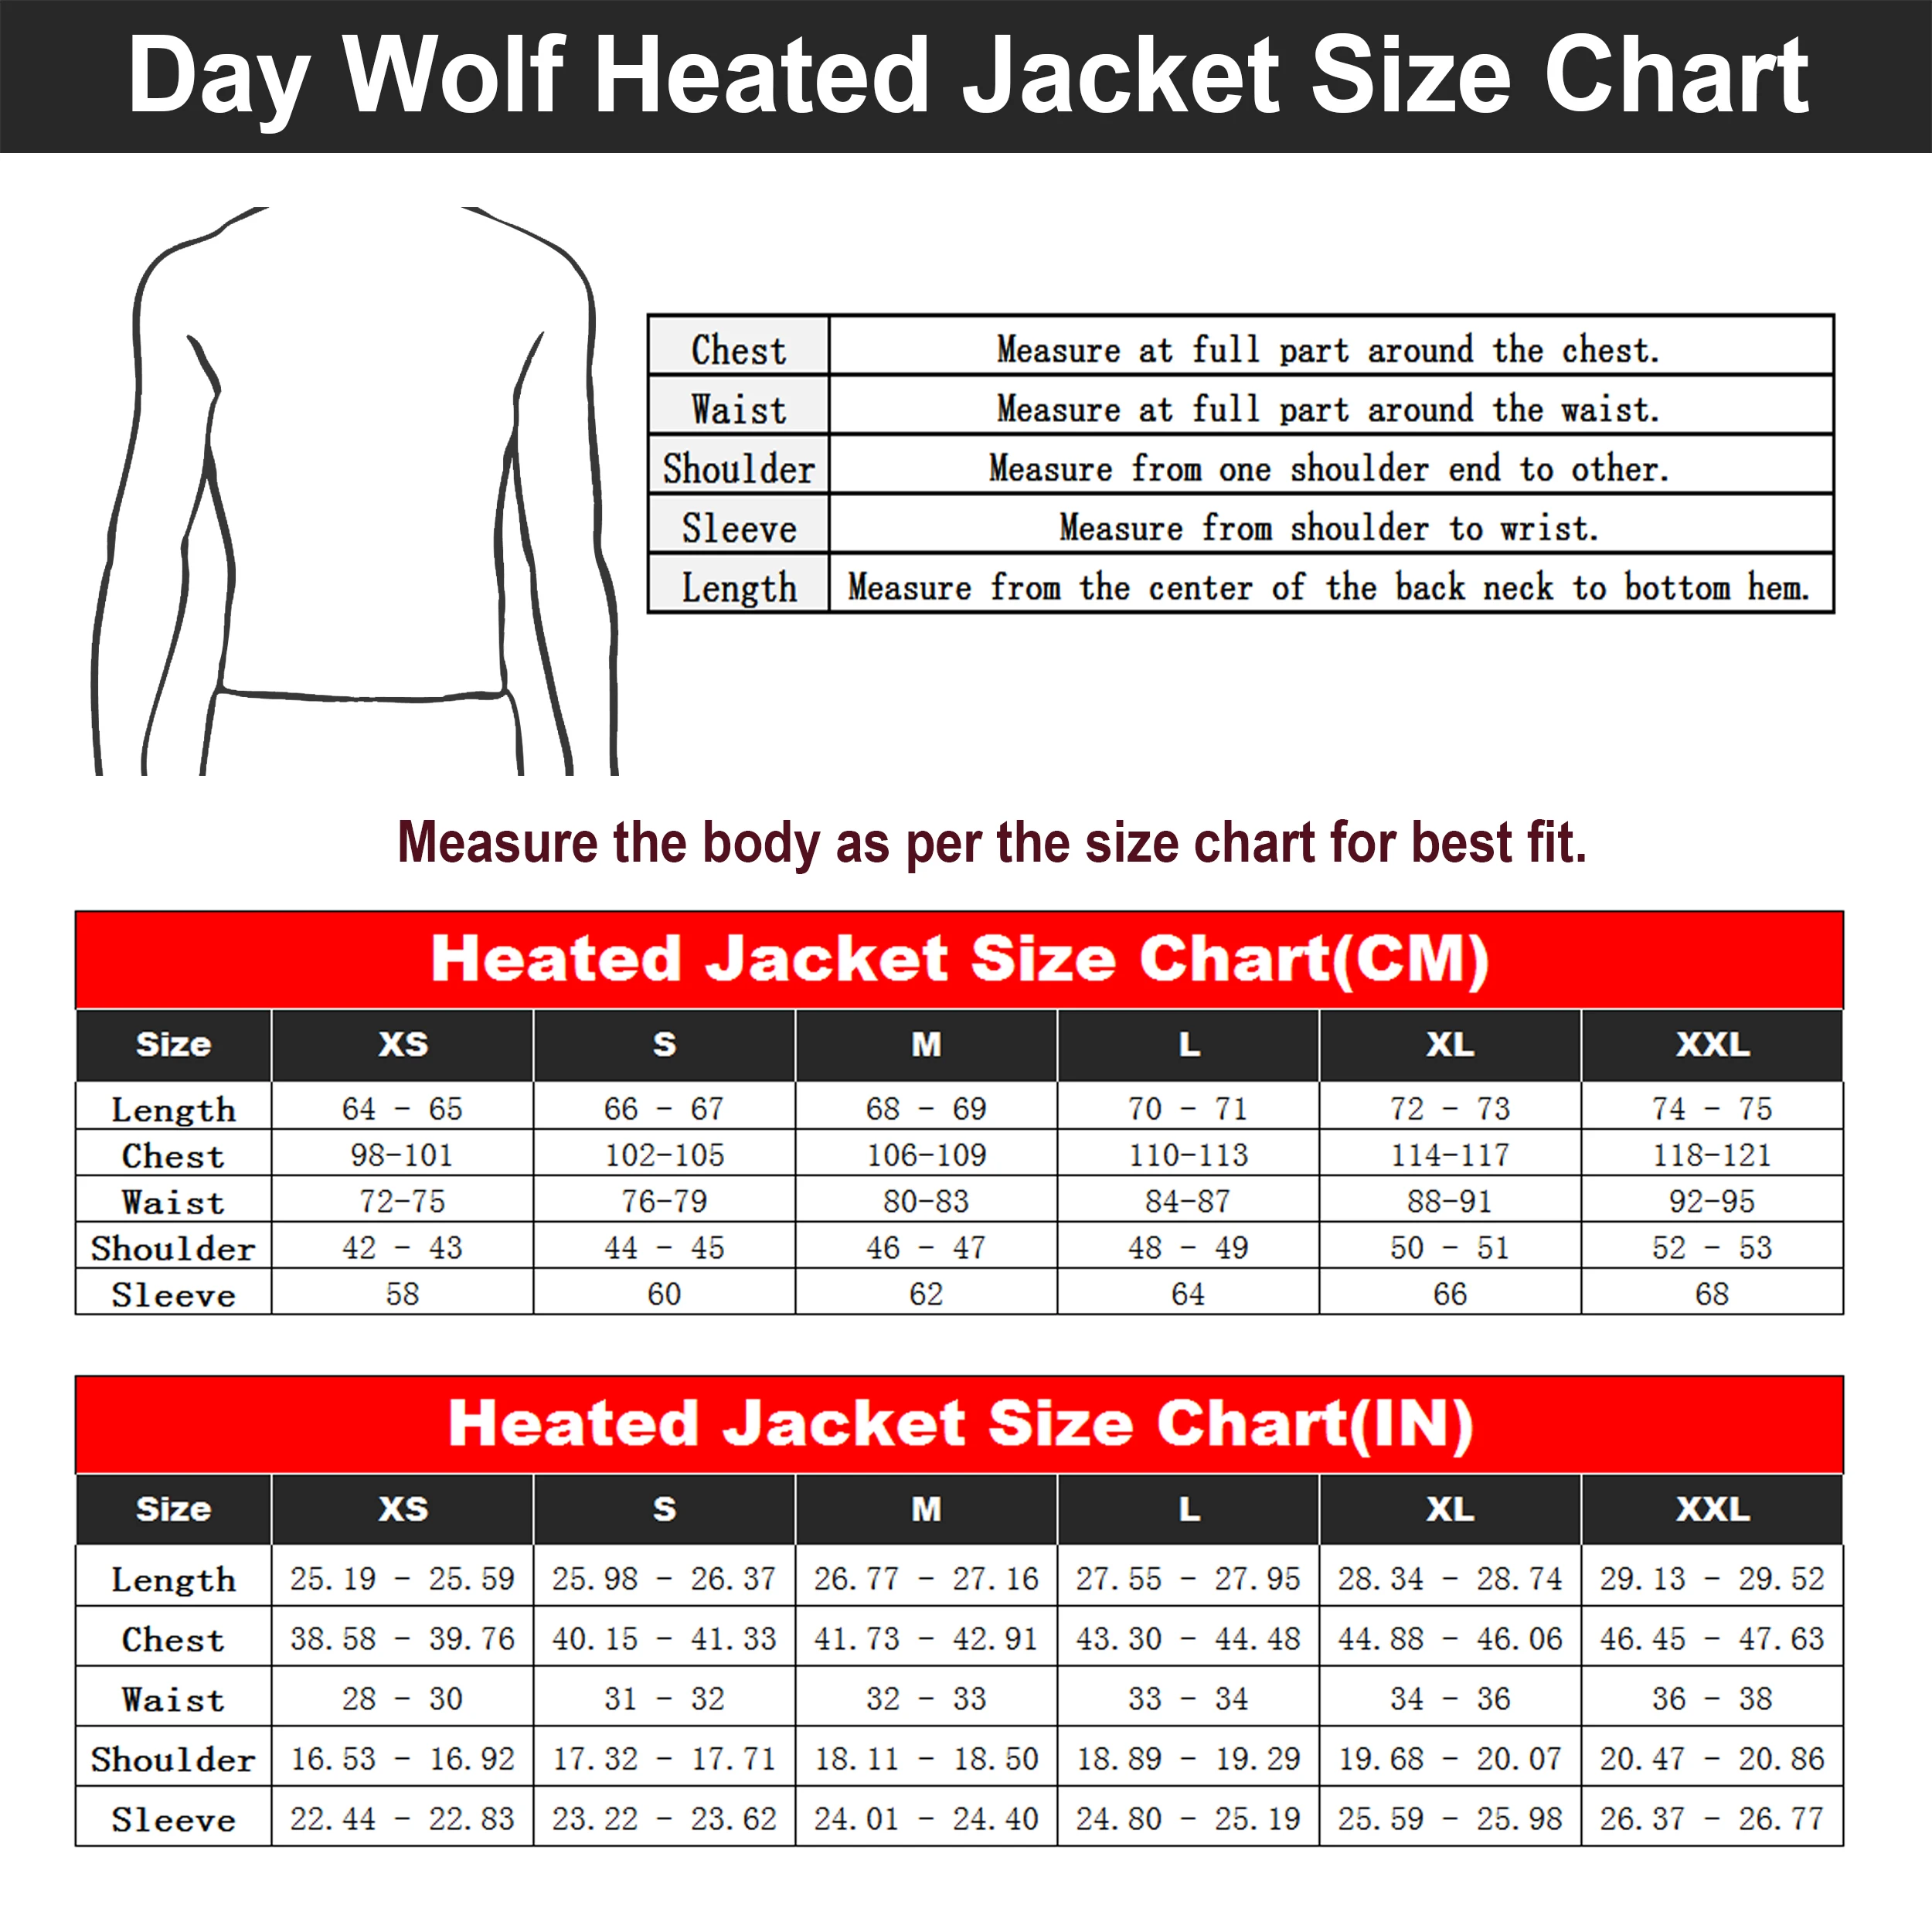 Теплая куртка на день волка, одежда на батарейках, одежда для велоспорта, новая спортивная теплая куртка, 3 файла, контроль температуры, для рыбалки, теплая